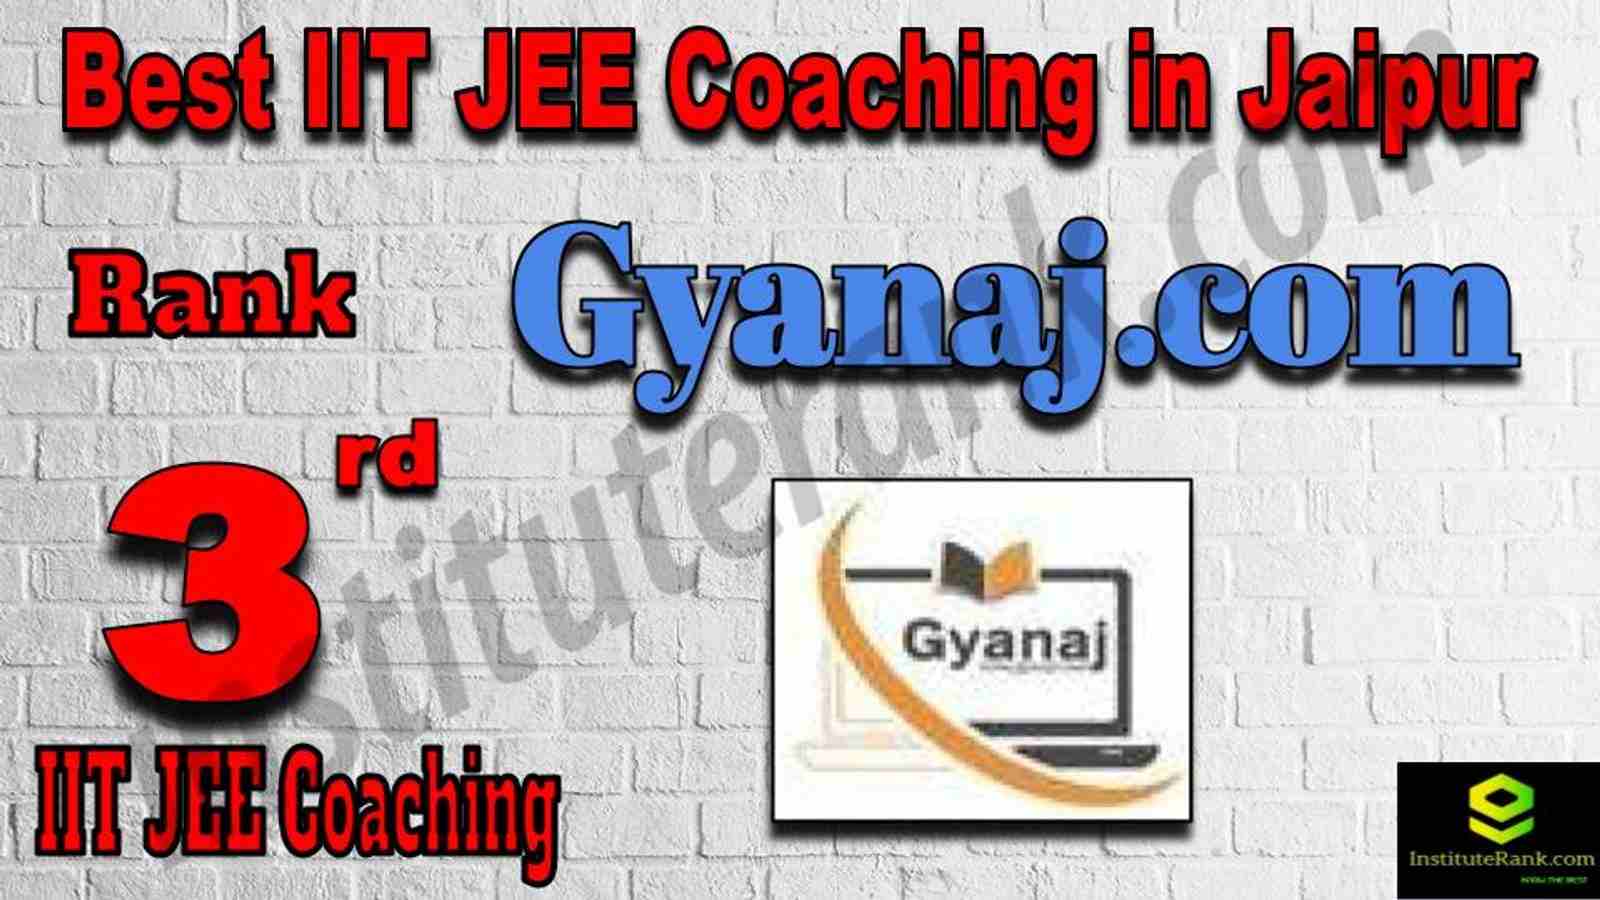 3rd Best IIT JEE Coaching in Jaipur